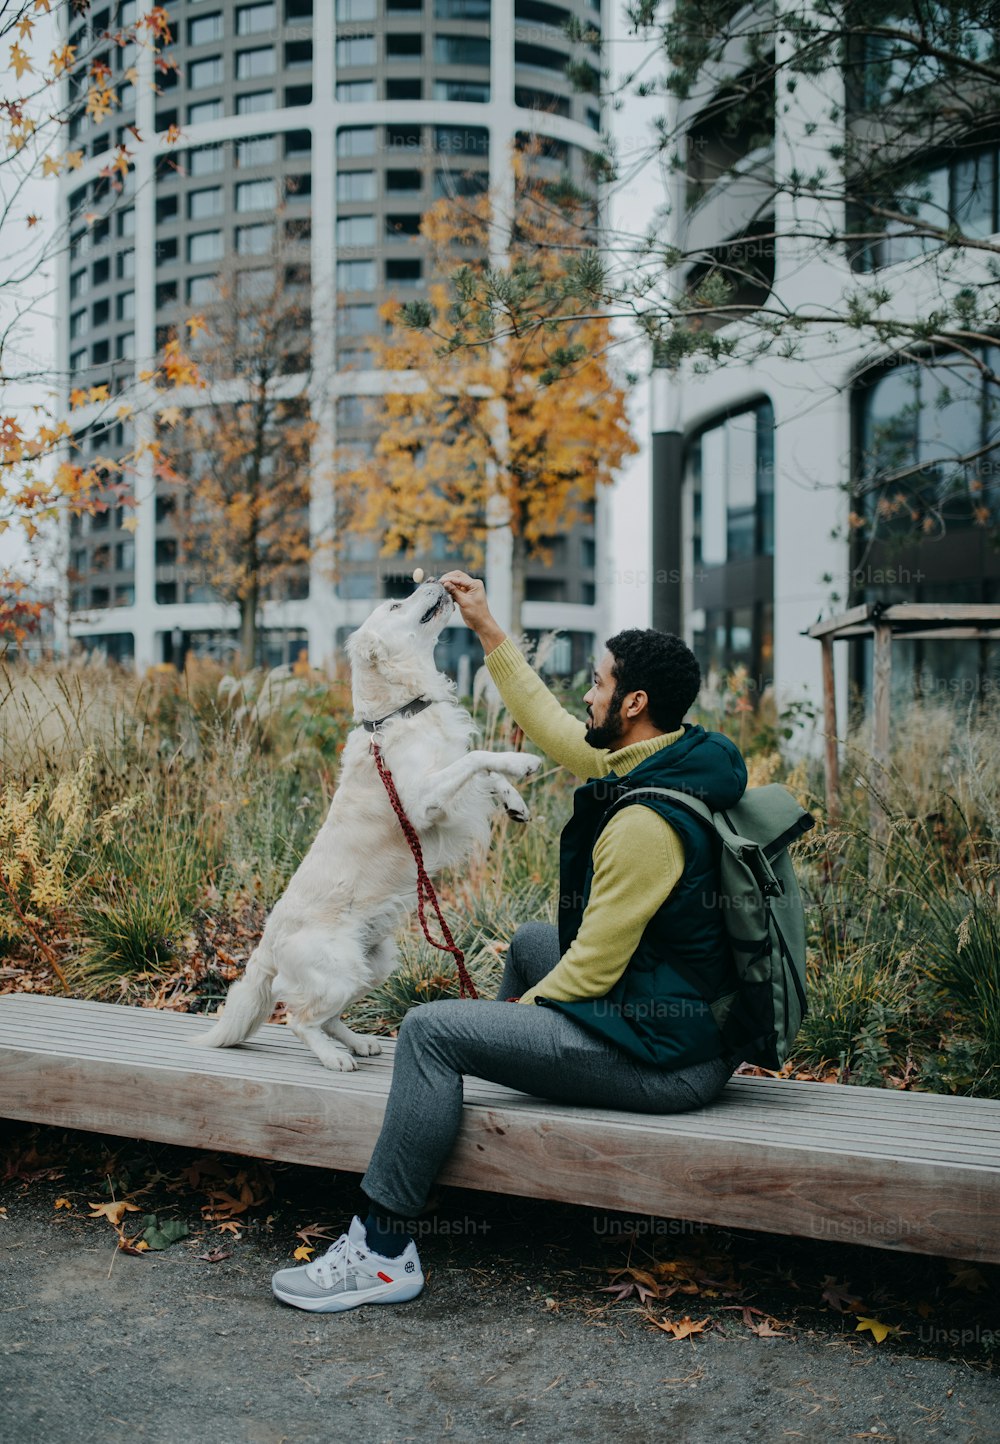 Eine Seitenansicht eines jungen Mannes, der auf der Bank sitzt und seinen Hund draußen in der Stadt trainiert.